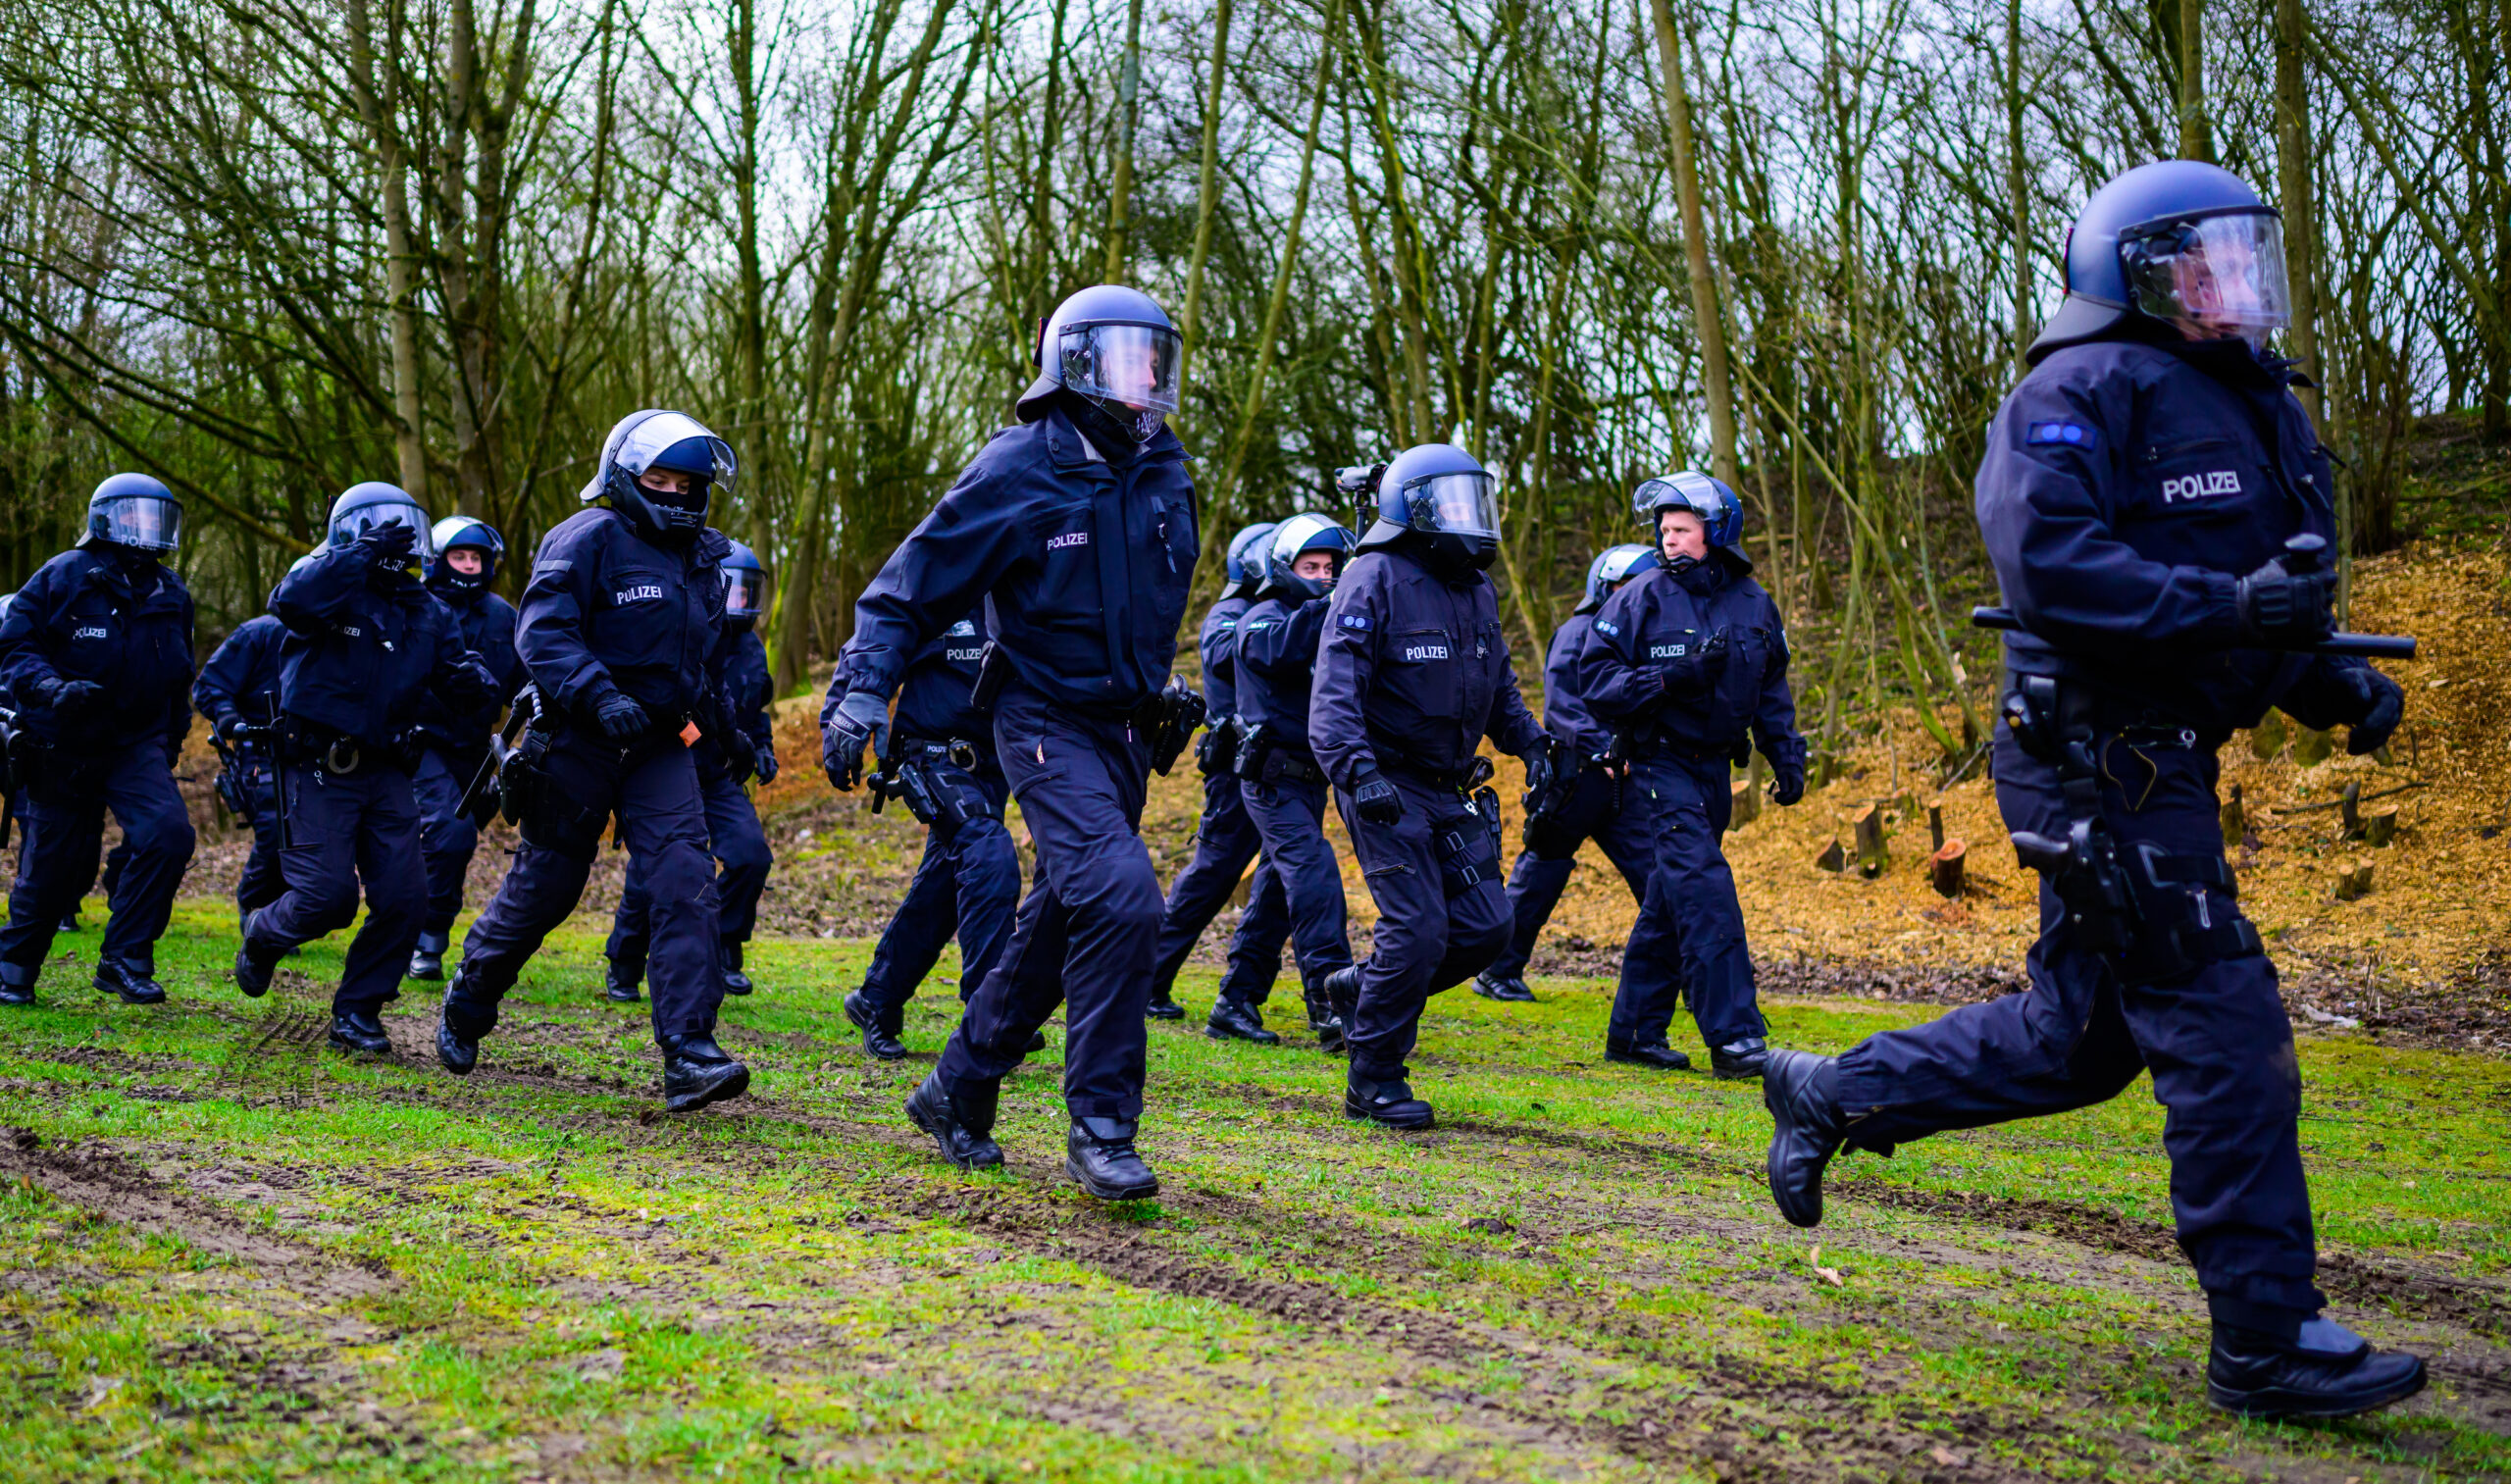 Polizisten der Bundespolizei laufen während einer Übung zum Einsatzort (Archivbild).